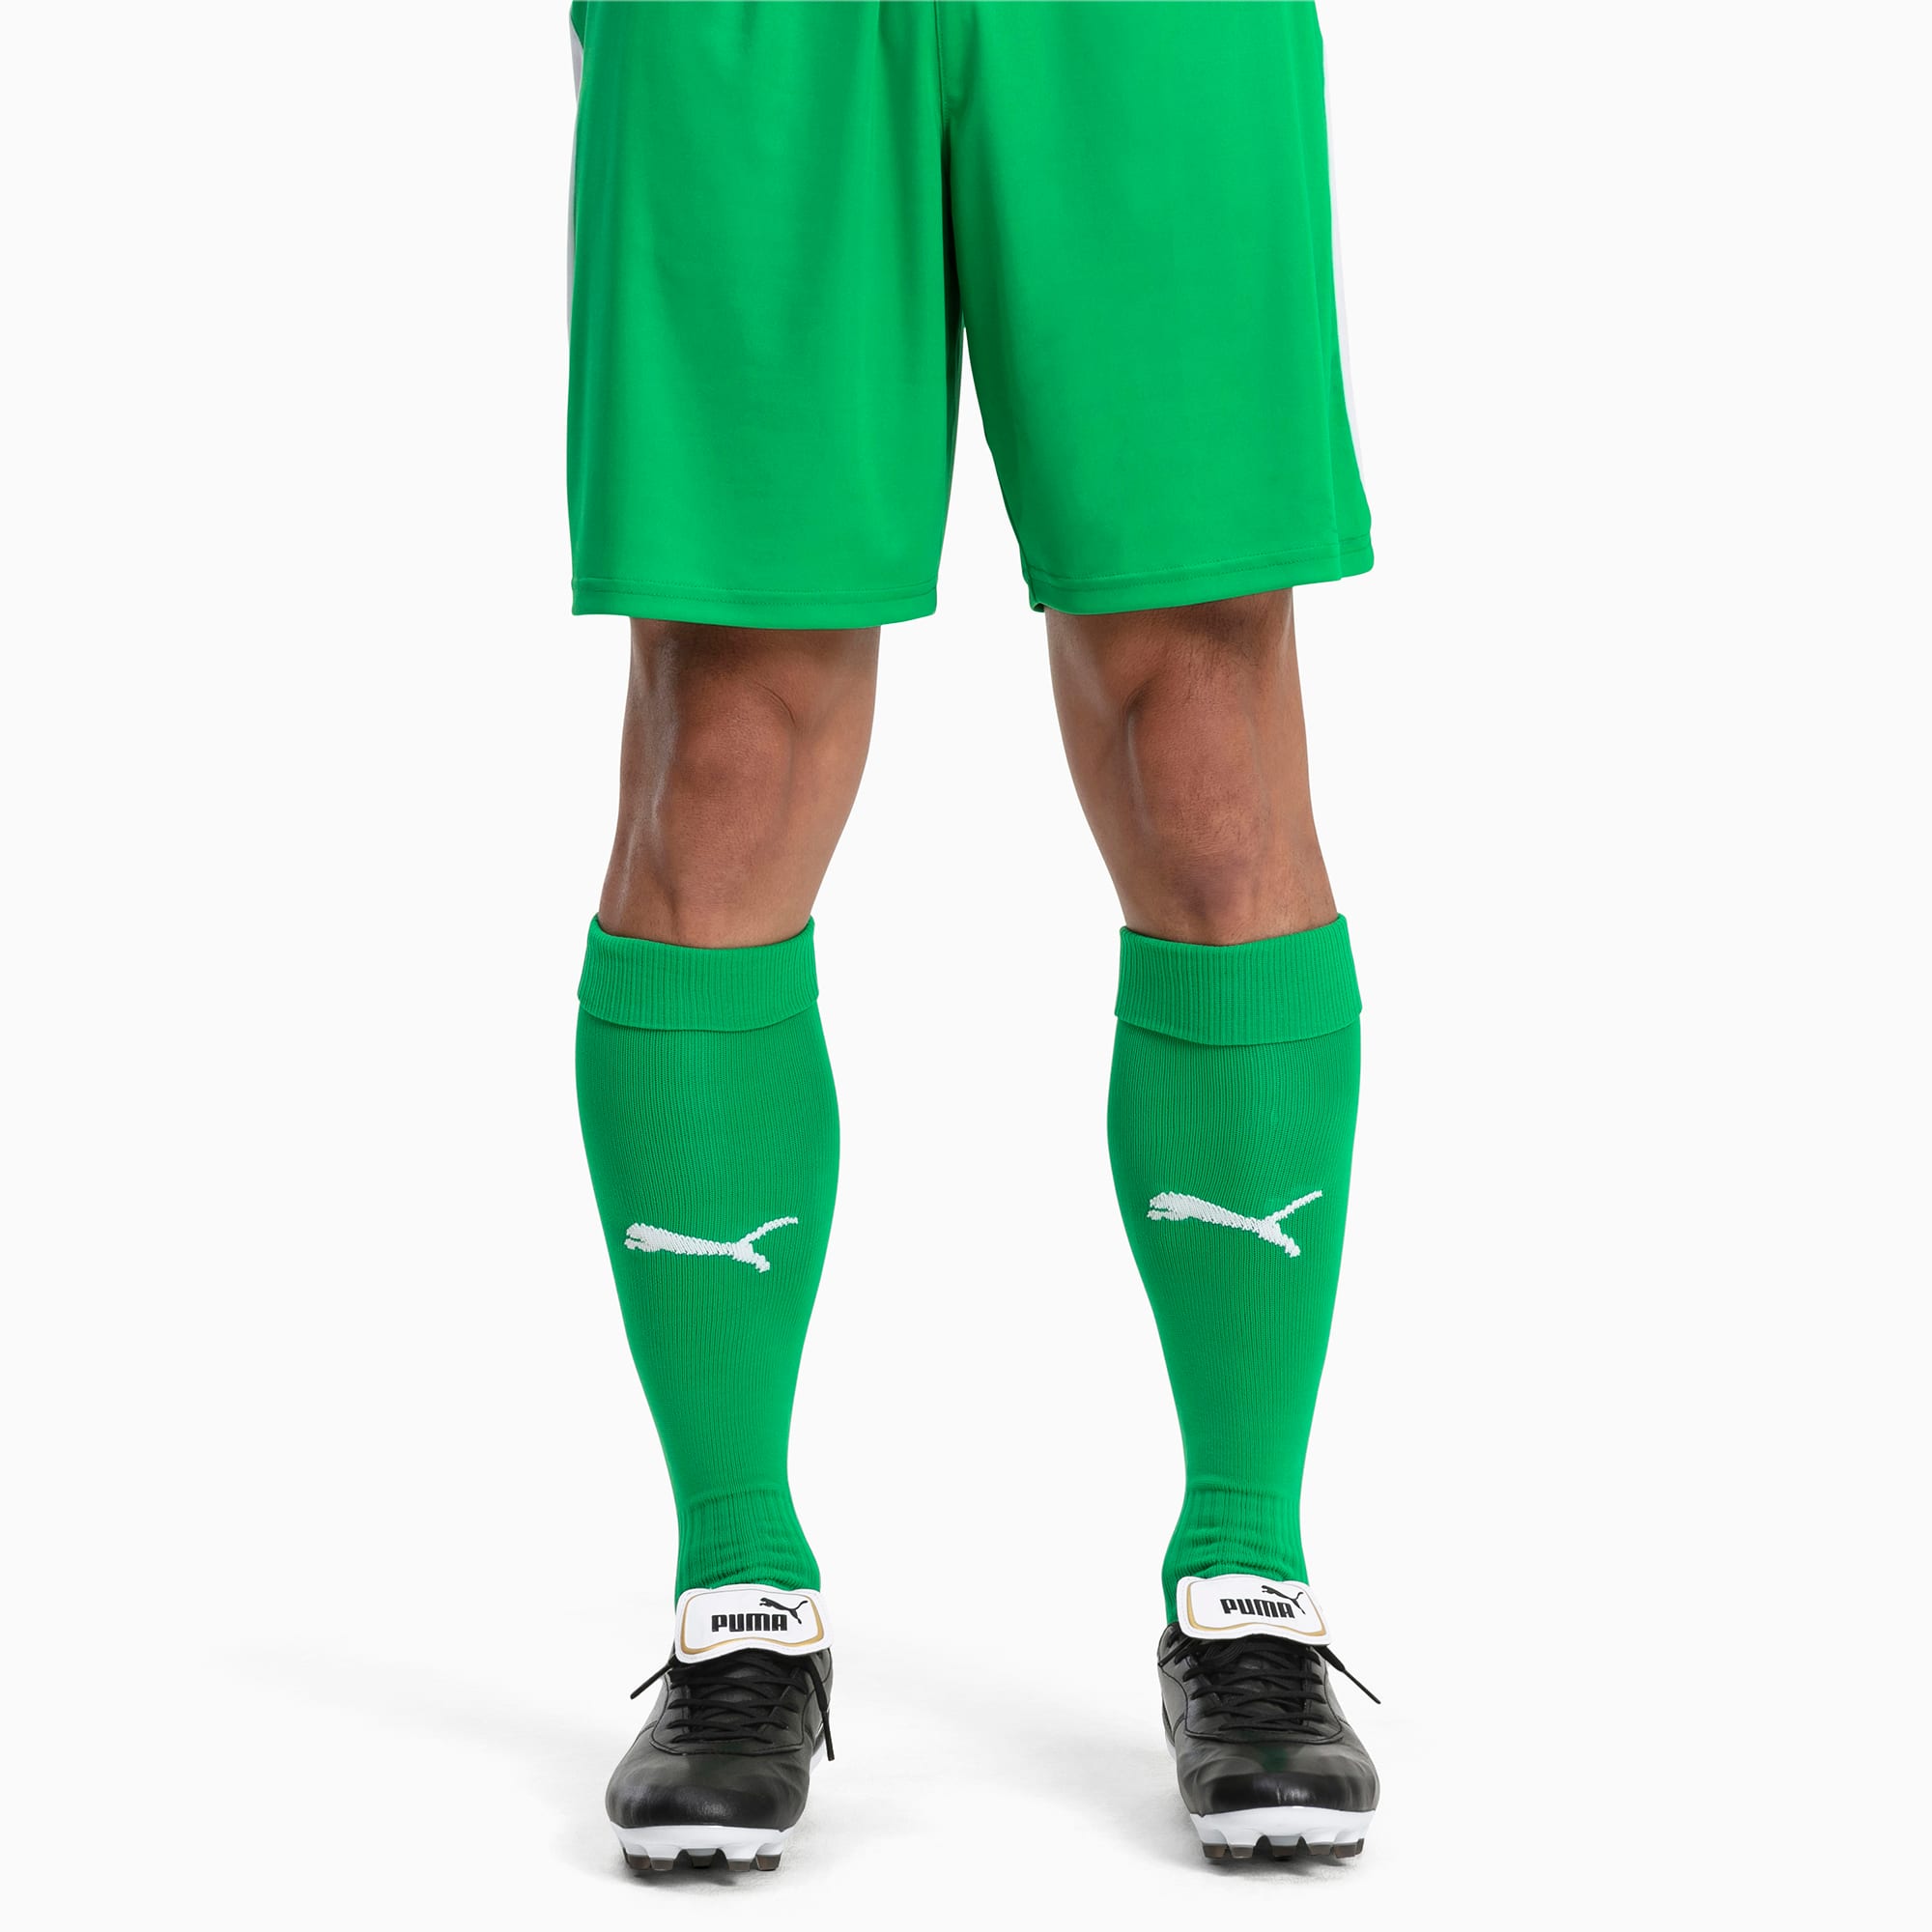 Image of PUMA Fußball Herren LIGA Core Socken | Mit Aucun | Grün/Weiß | Größe: 47-49